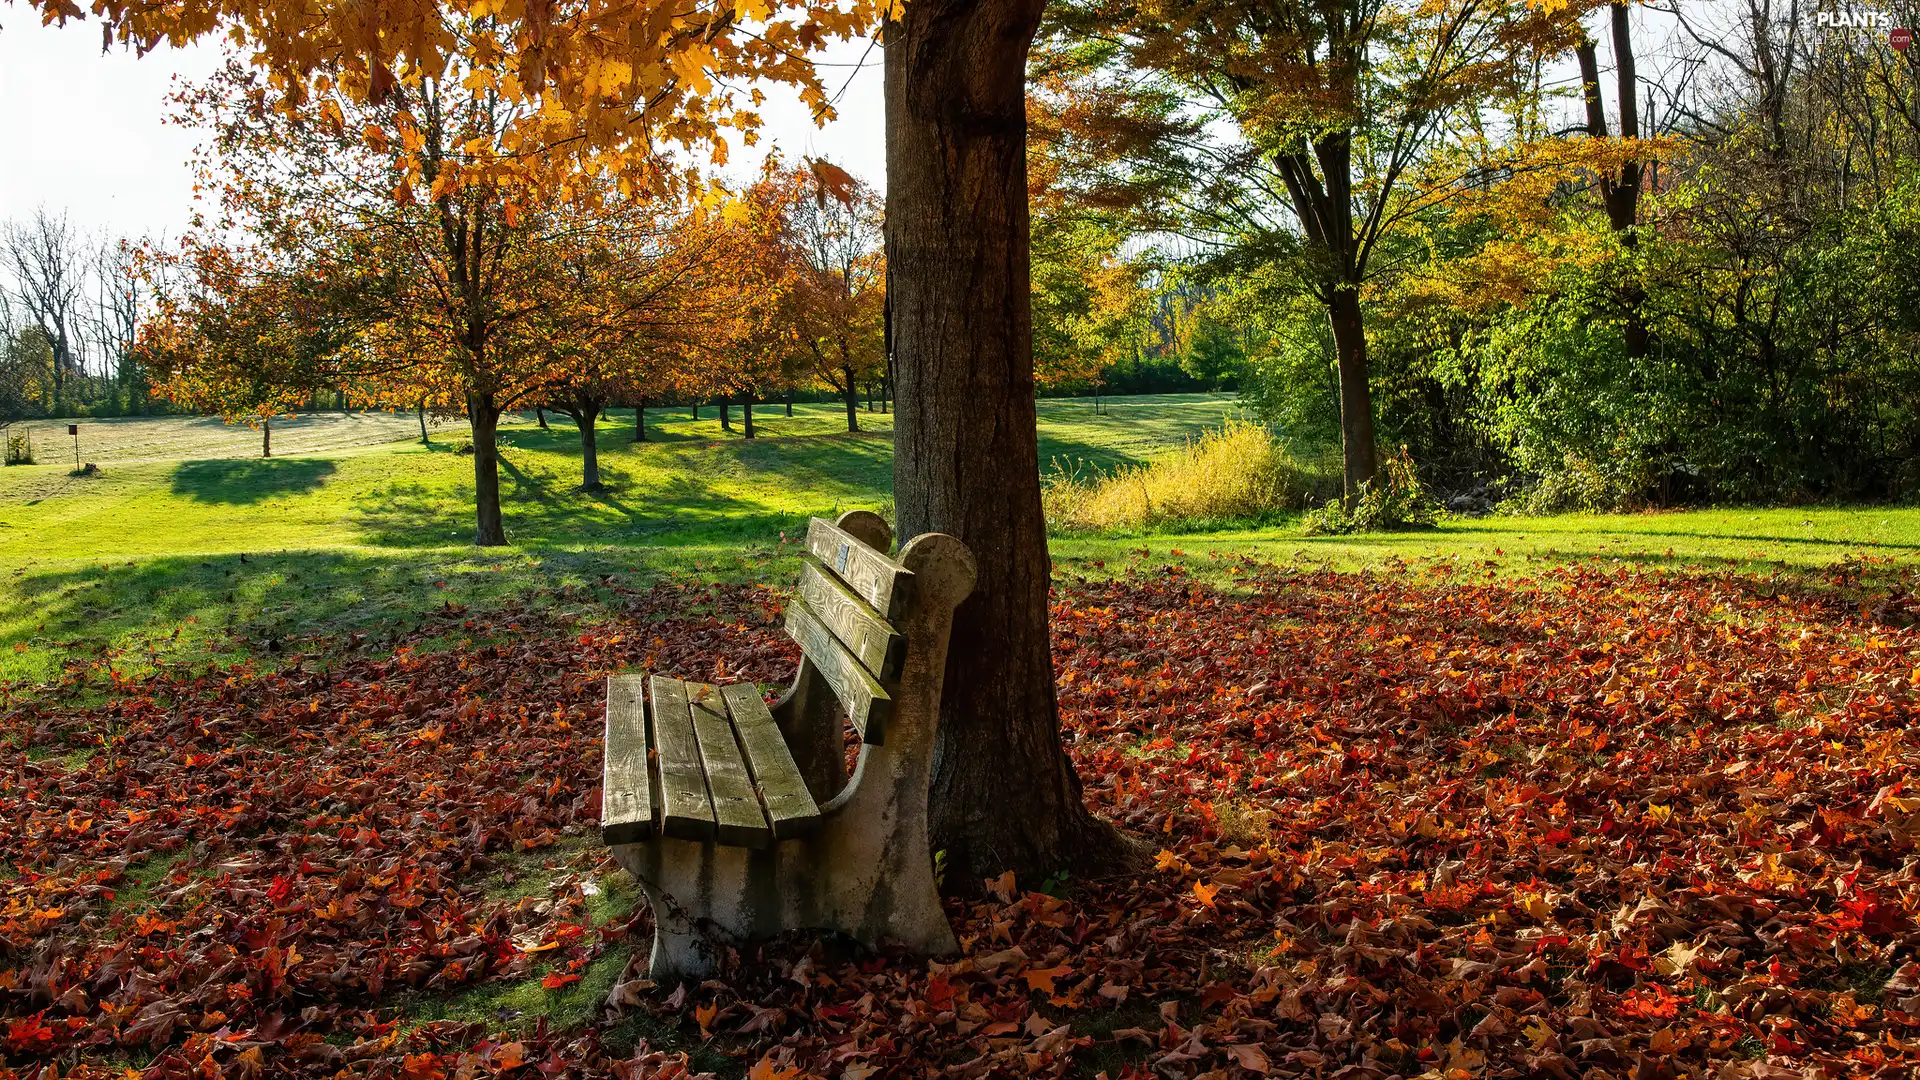 Leaf, autumn, trees, fallen, Park, Bench, viewes